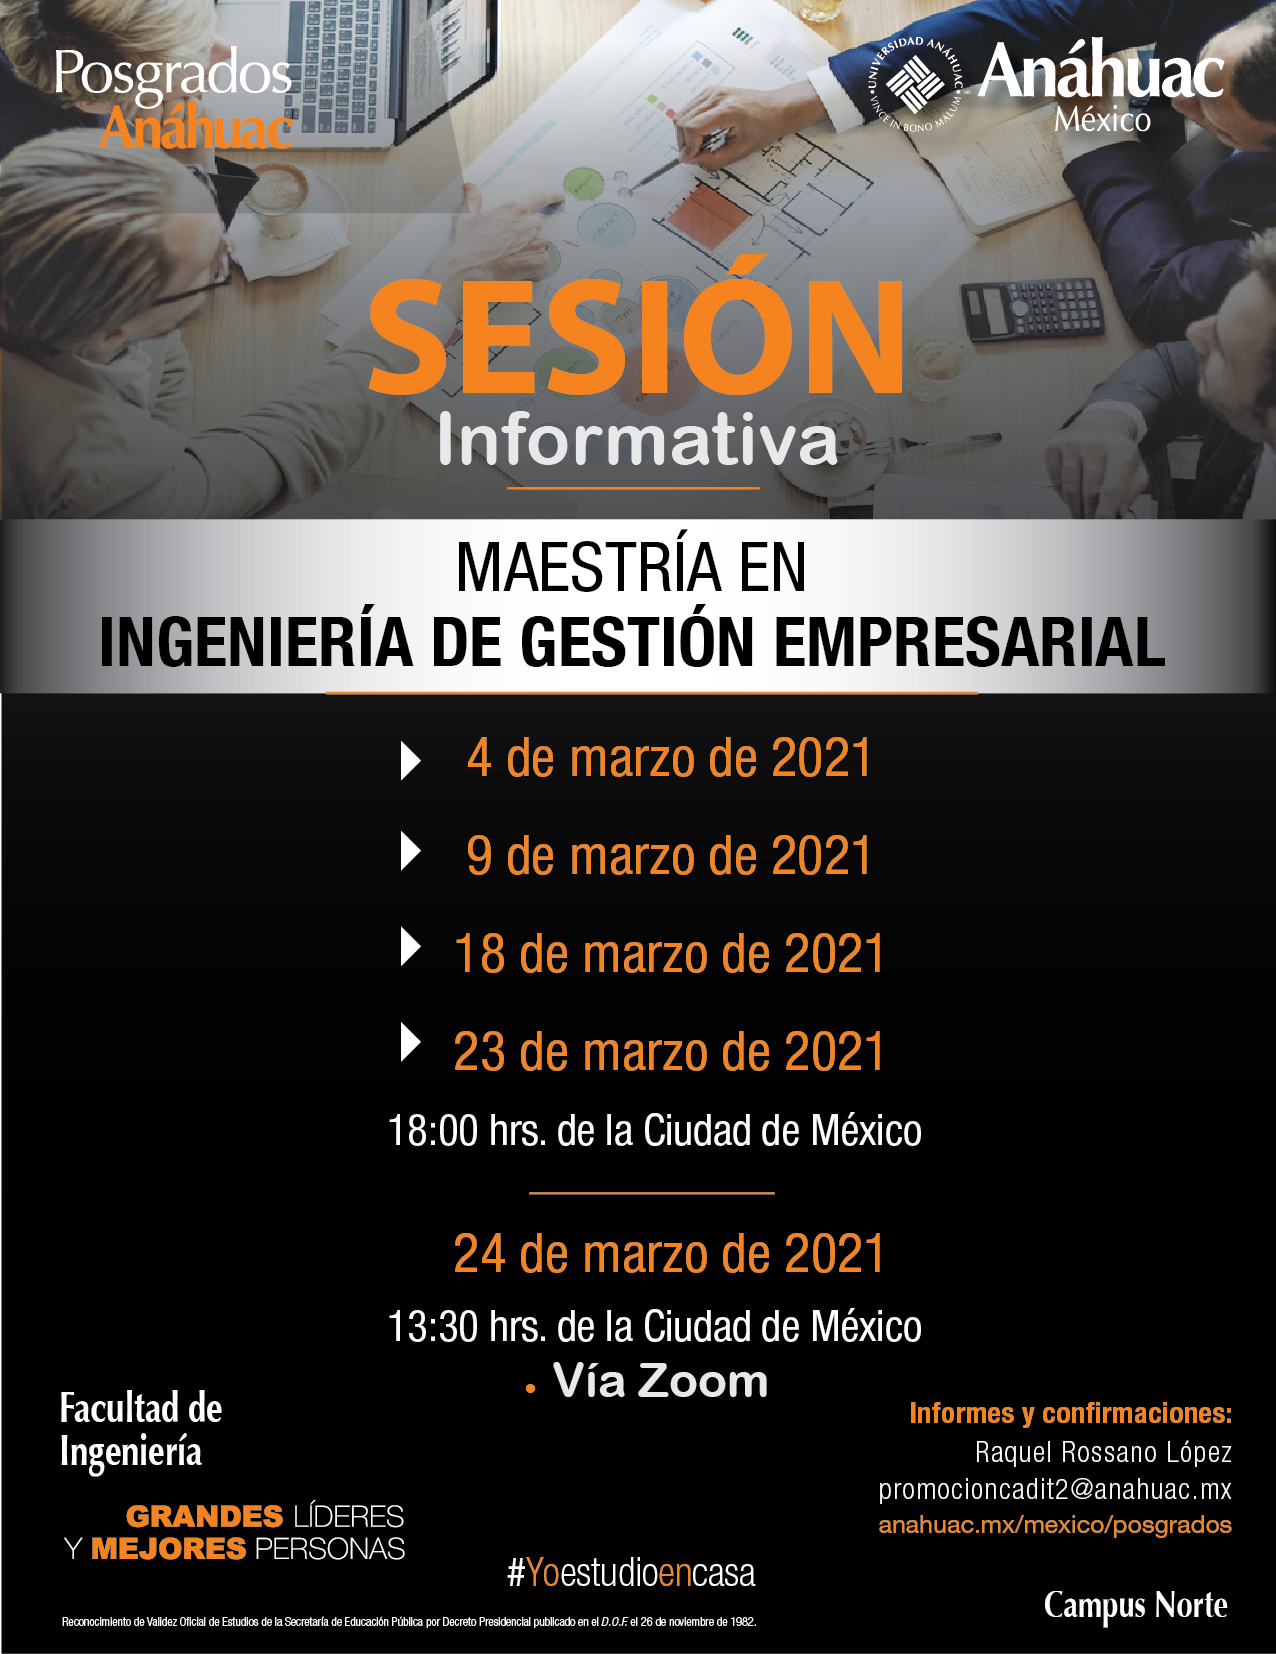 Sesiones informativas en marzo de la Maestría en Ingeniería de Gestión Empresarial